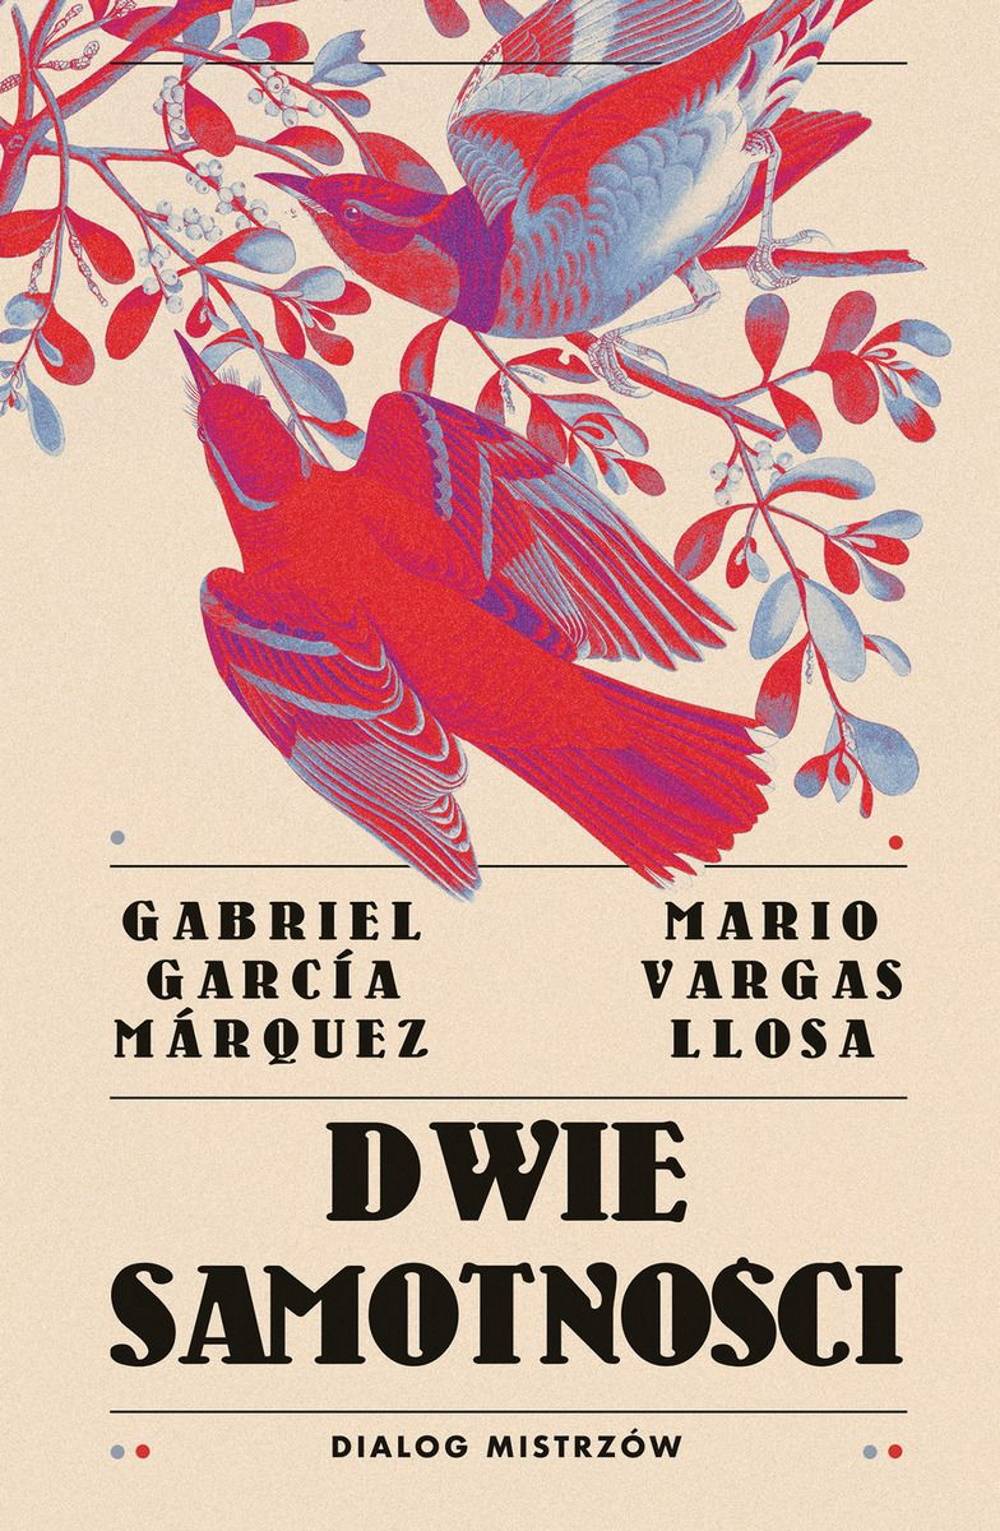 Gabriel Garcia Marquez, Mario Vargas Llosa „Dwie samotności. Dialog mistrzów” (Fot. materiały prasowe)